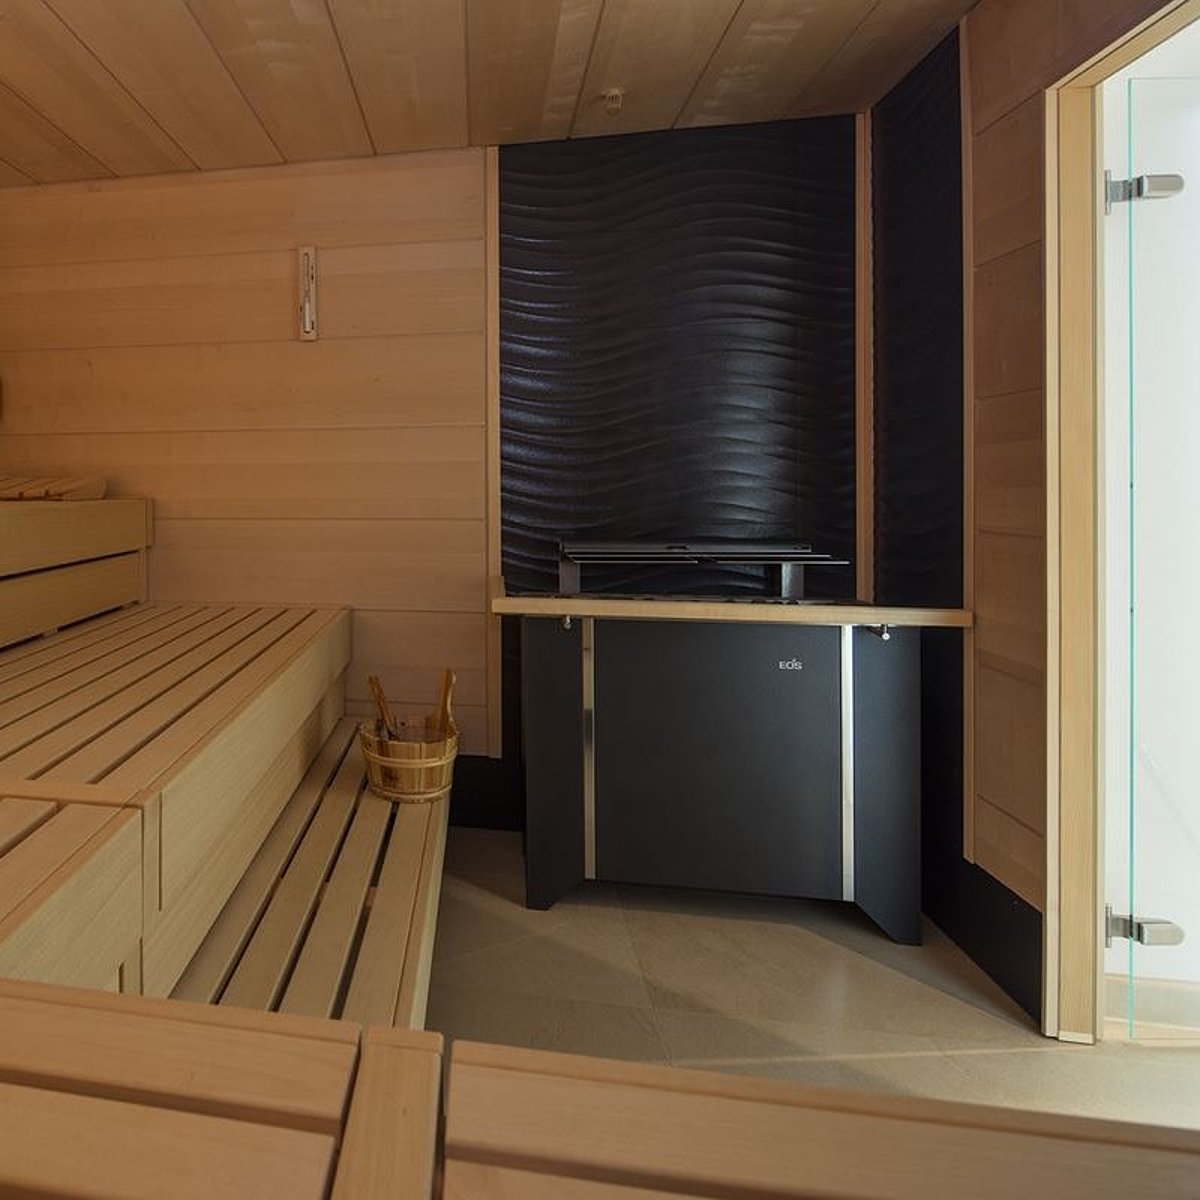 Interieur van een commerciële sauna met verlichting.